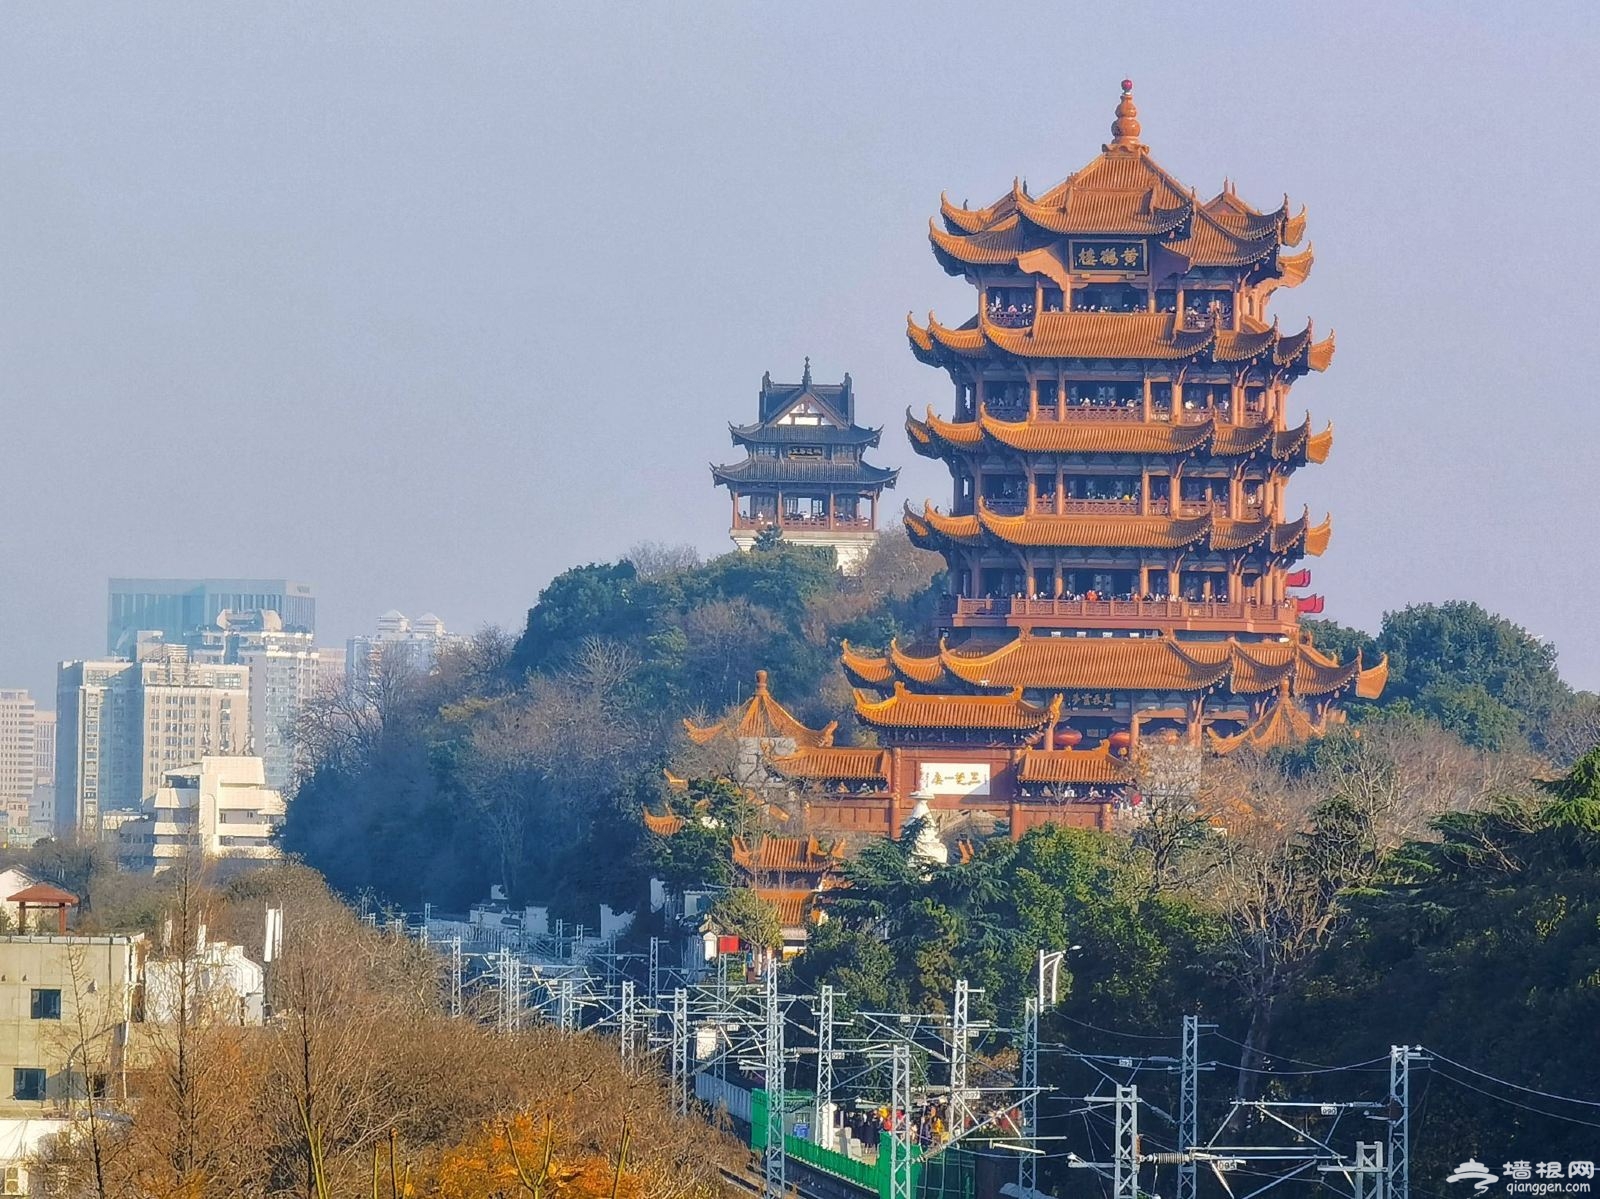 黄鹤楼位于武汉长江南岸武昌蛇山峰岭之上,为国家5a级旅游景区,享有